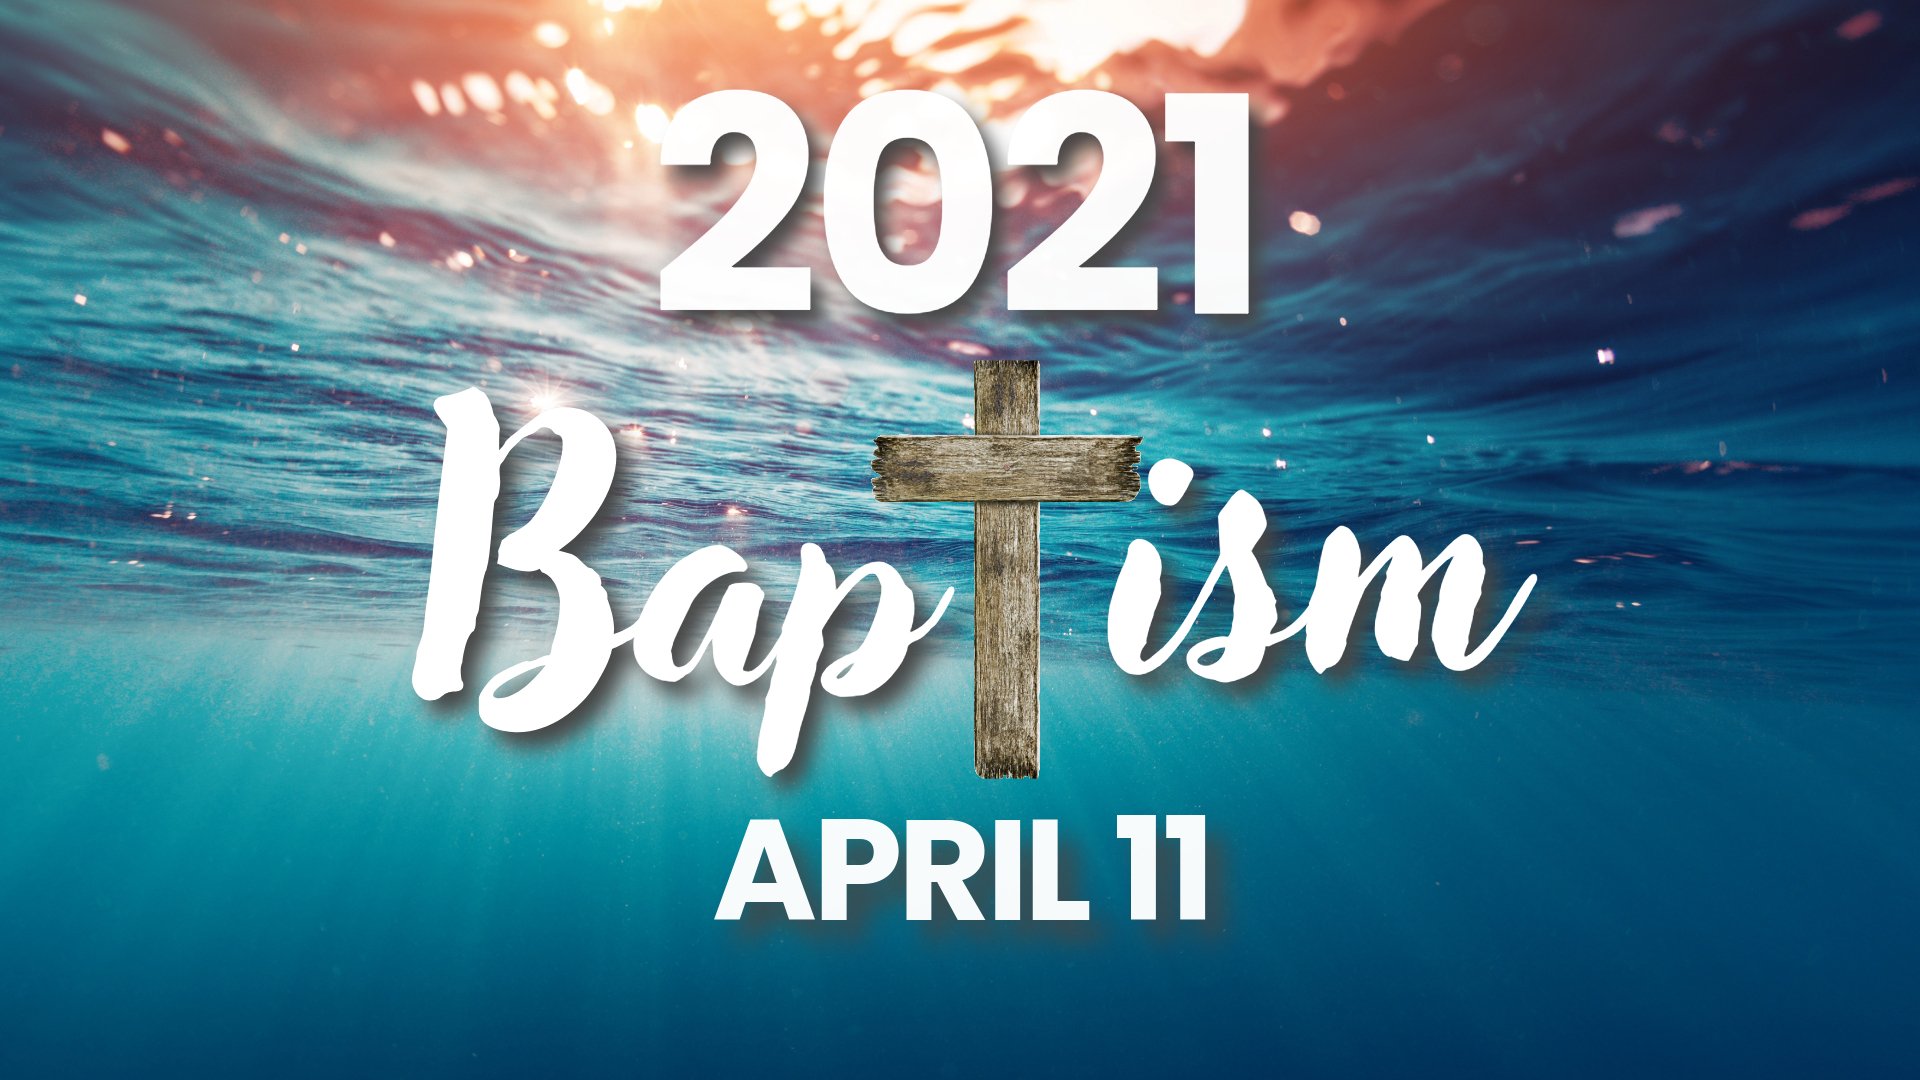 Baptism 2021 April 11.jpeg